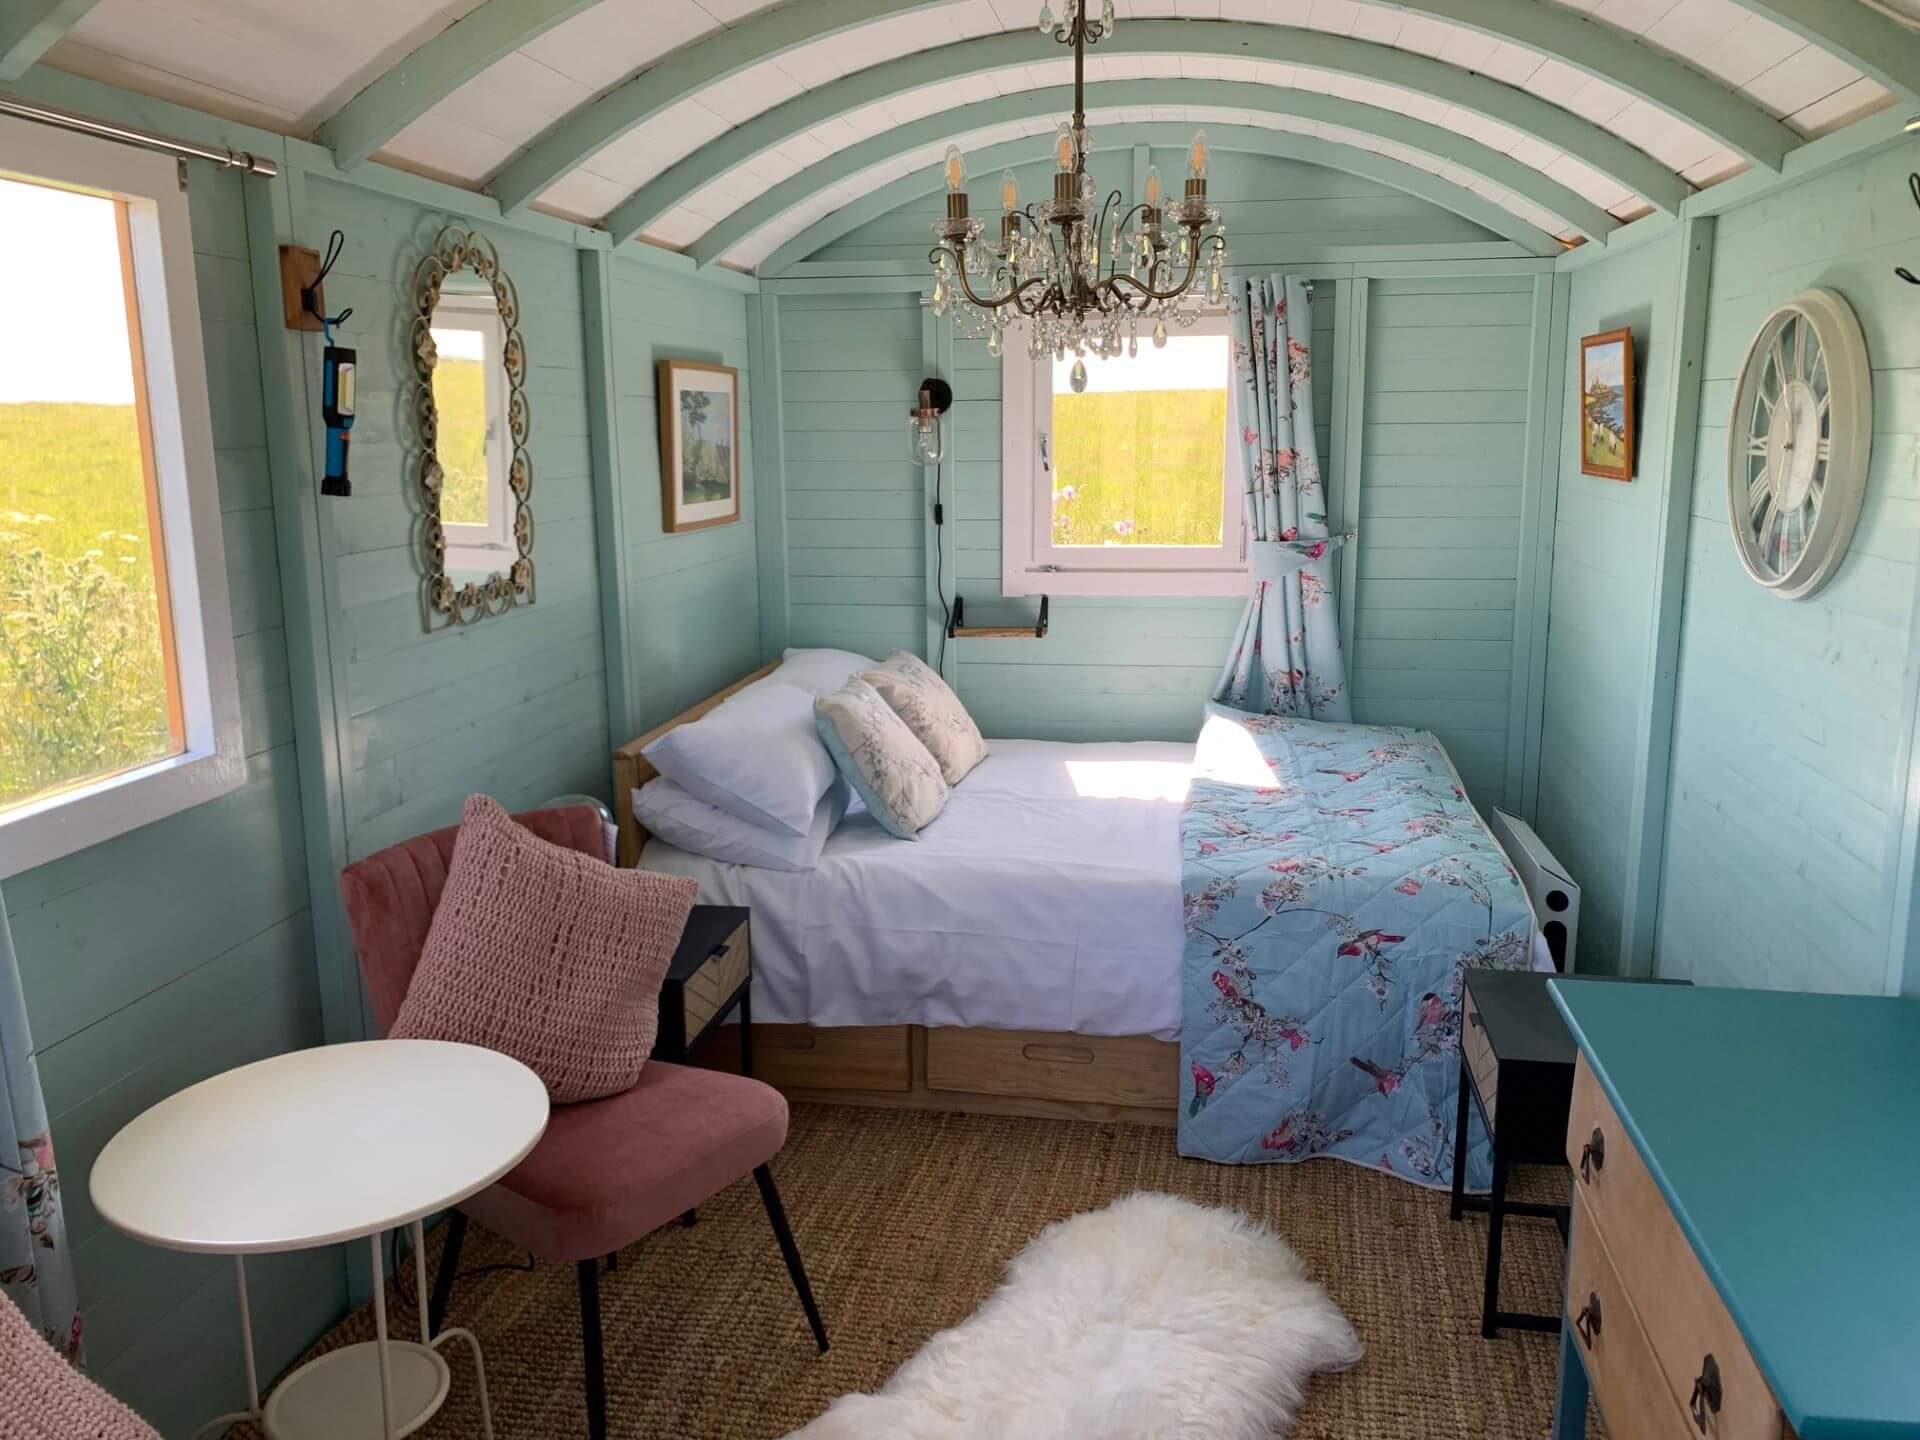 Inside Shepherd's hut - double bed